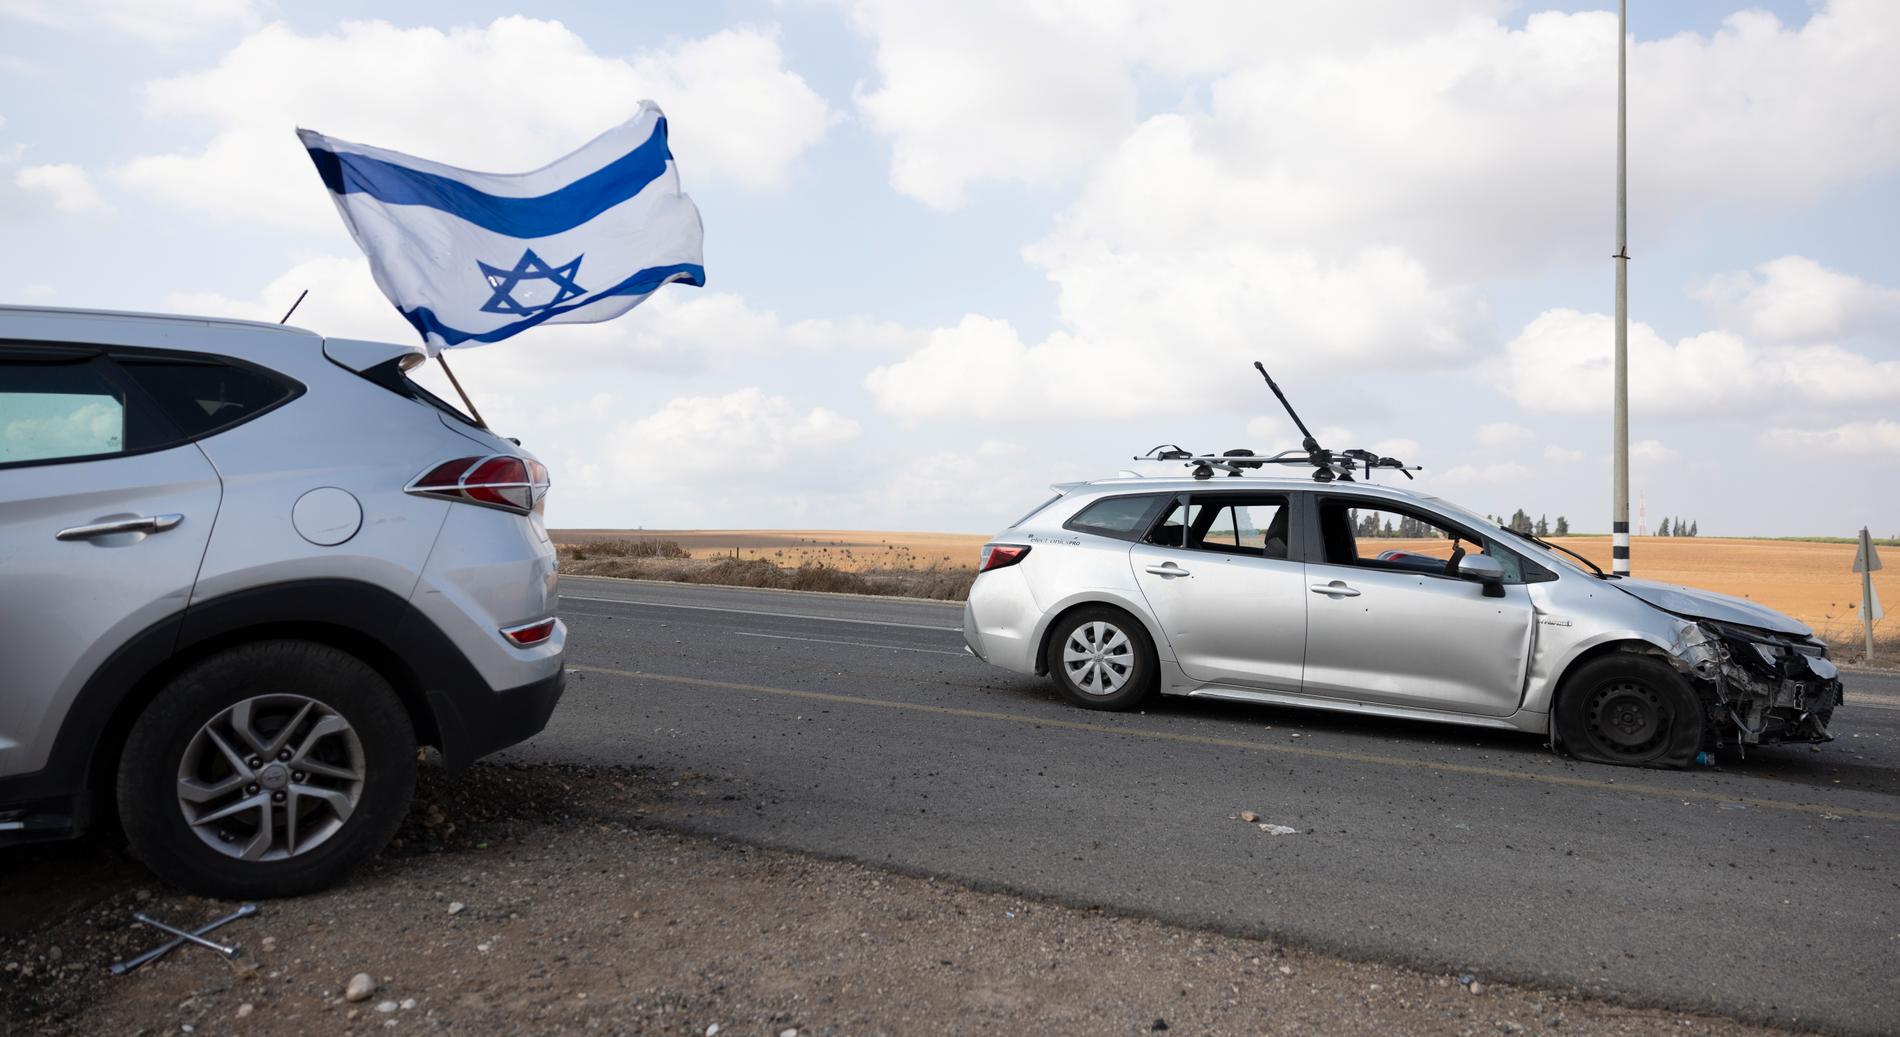 Övergivna bilar längs vägen. En Israelisk flagga med kulhål vajar i vinden.